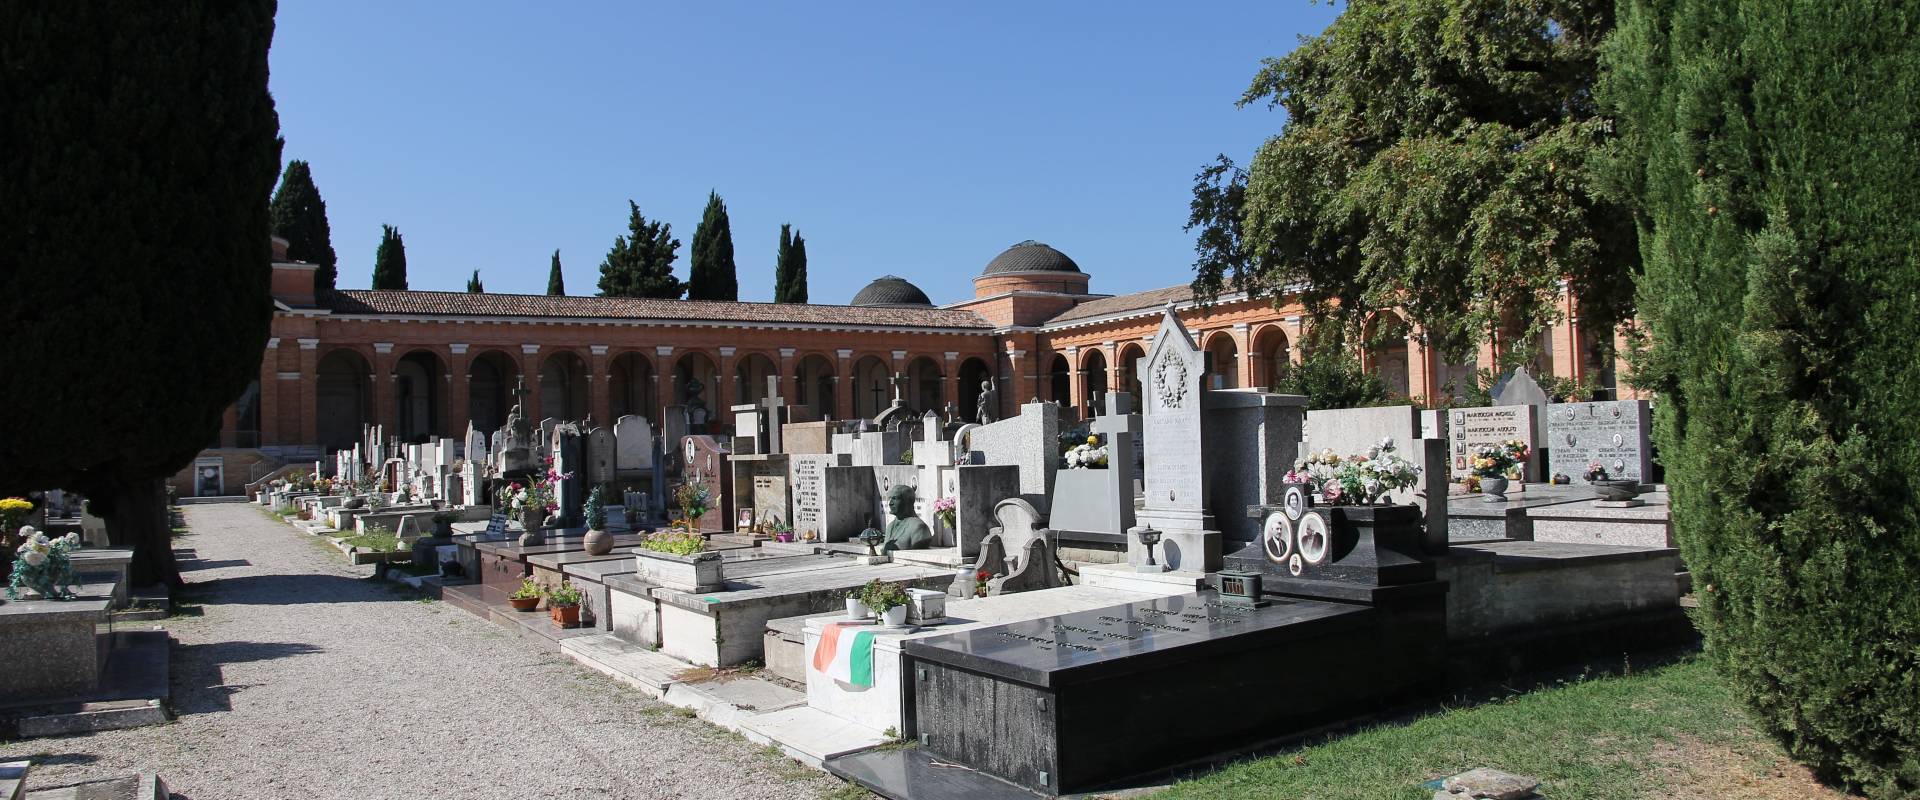 Forlì, cimitero monumentale (15) foto di Gianni Careddu